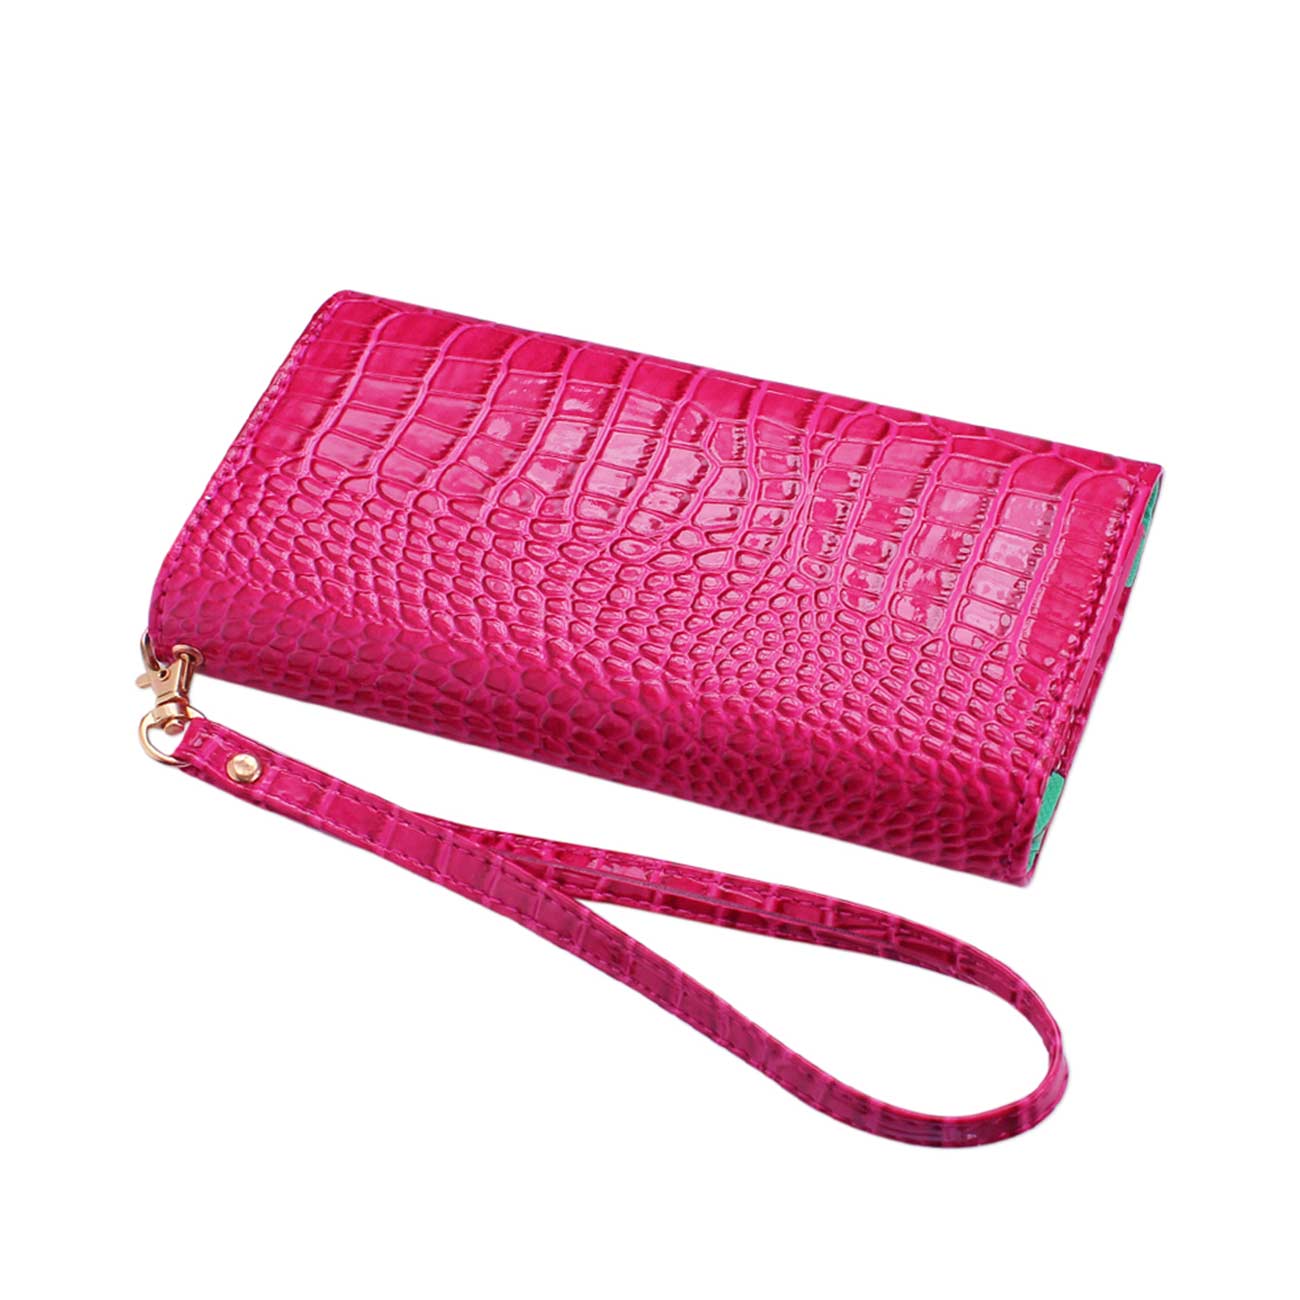 Crocodile Pattern Purse Wallet Case In Hot Pink